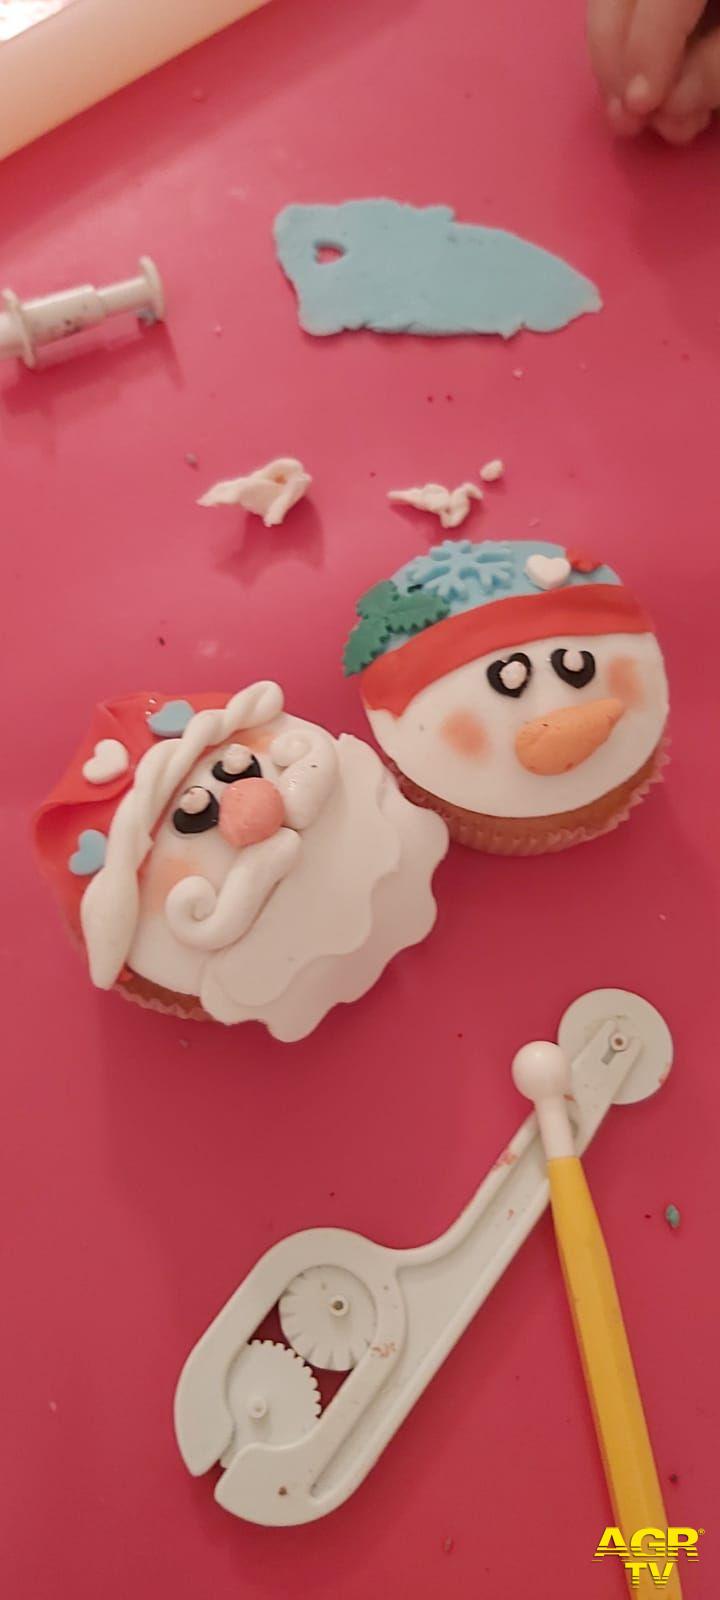 Il primo laboratorio ha permesso ai piccoli decoratori di realizzare due cupcake natalizi